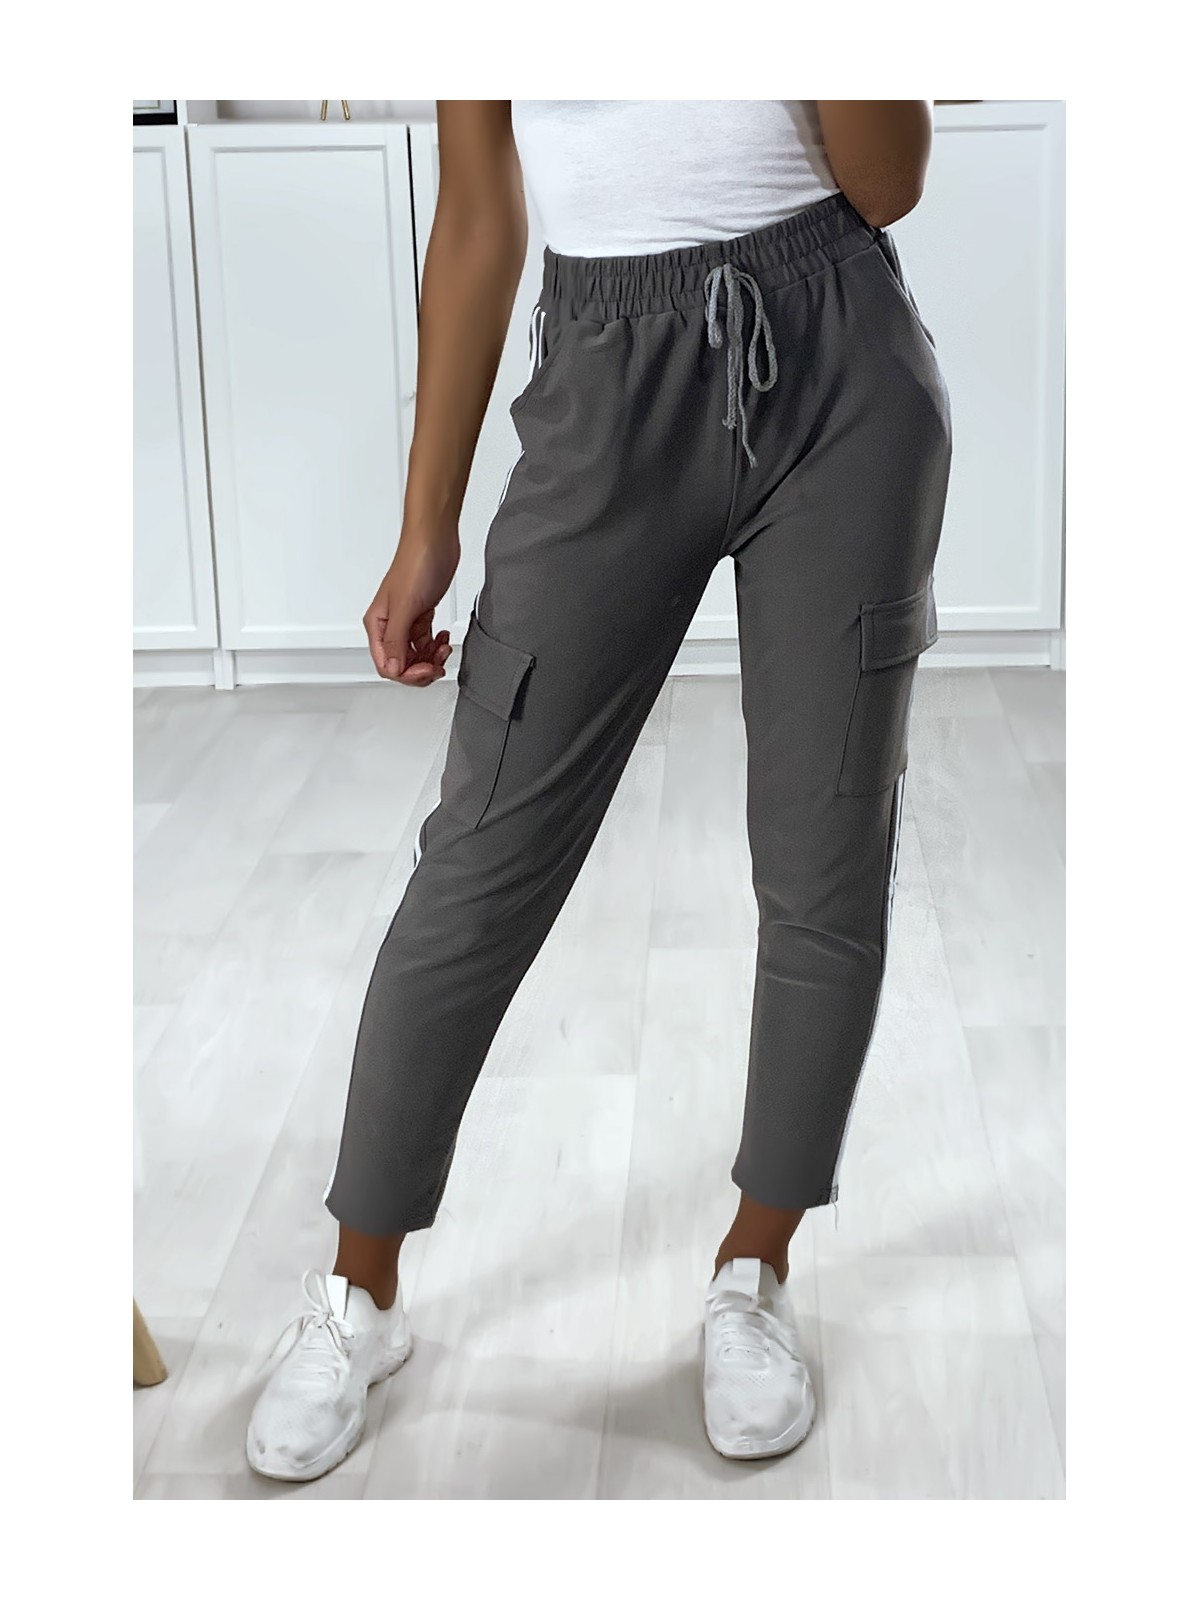 Pantalon jogging gris avec bandes et poches sur les cotés - 2